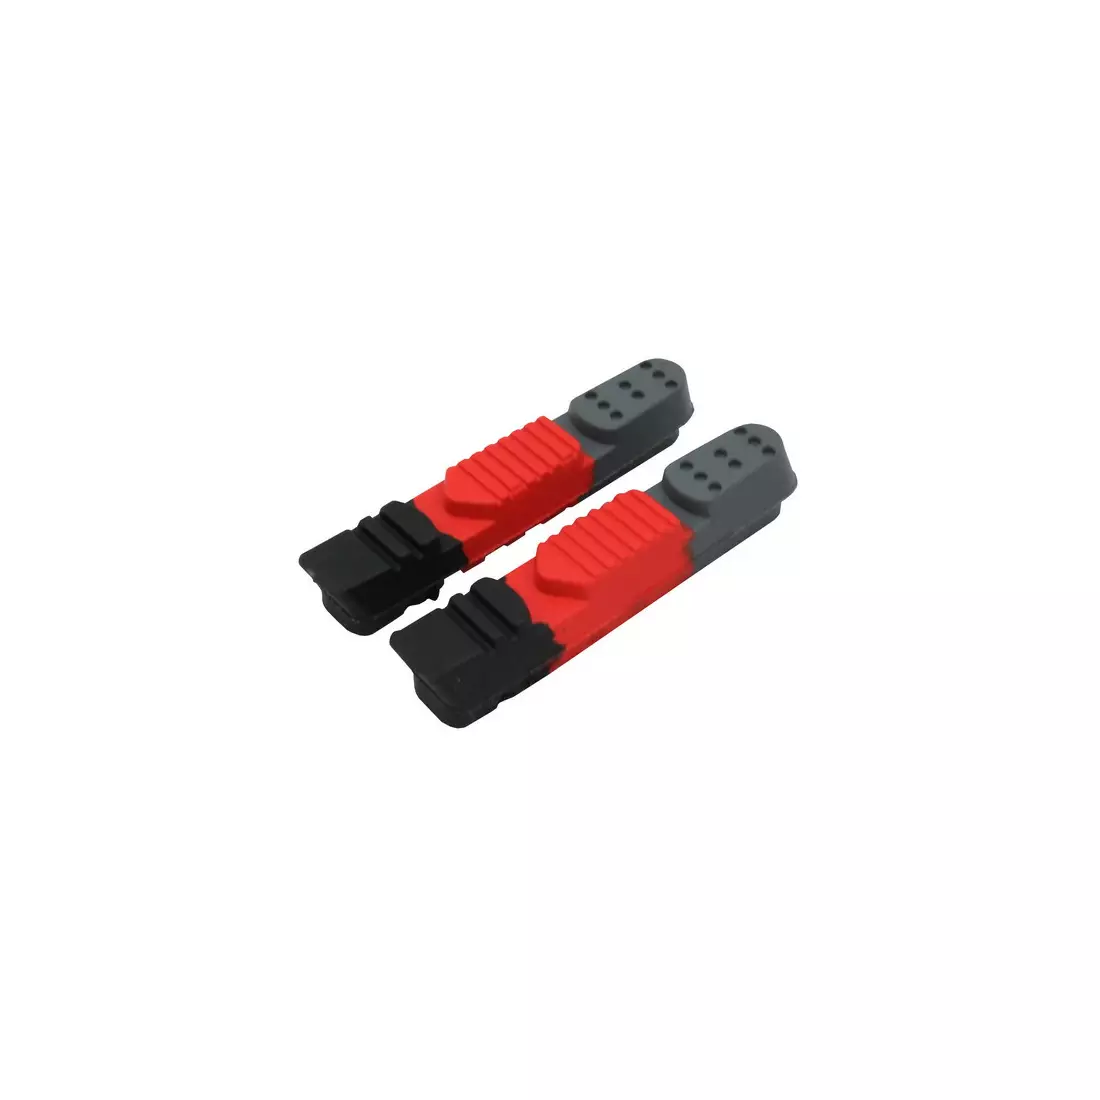 CLARKS CPS220 Bremsbeläge für Bremsen Shimano/Sram/Tektro, schwarz-rot-grau